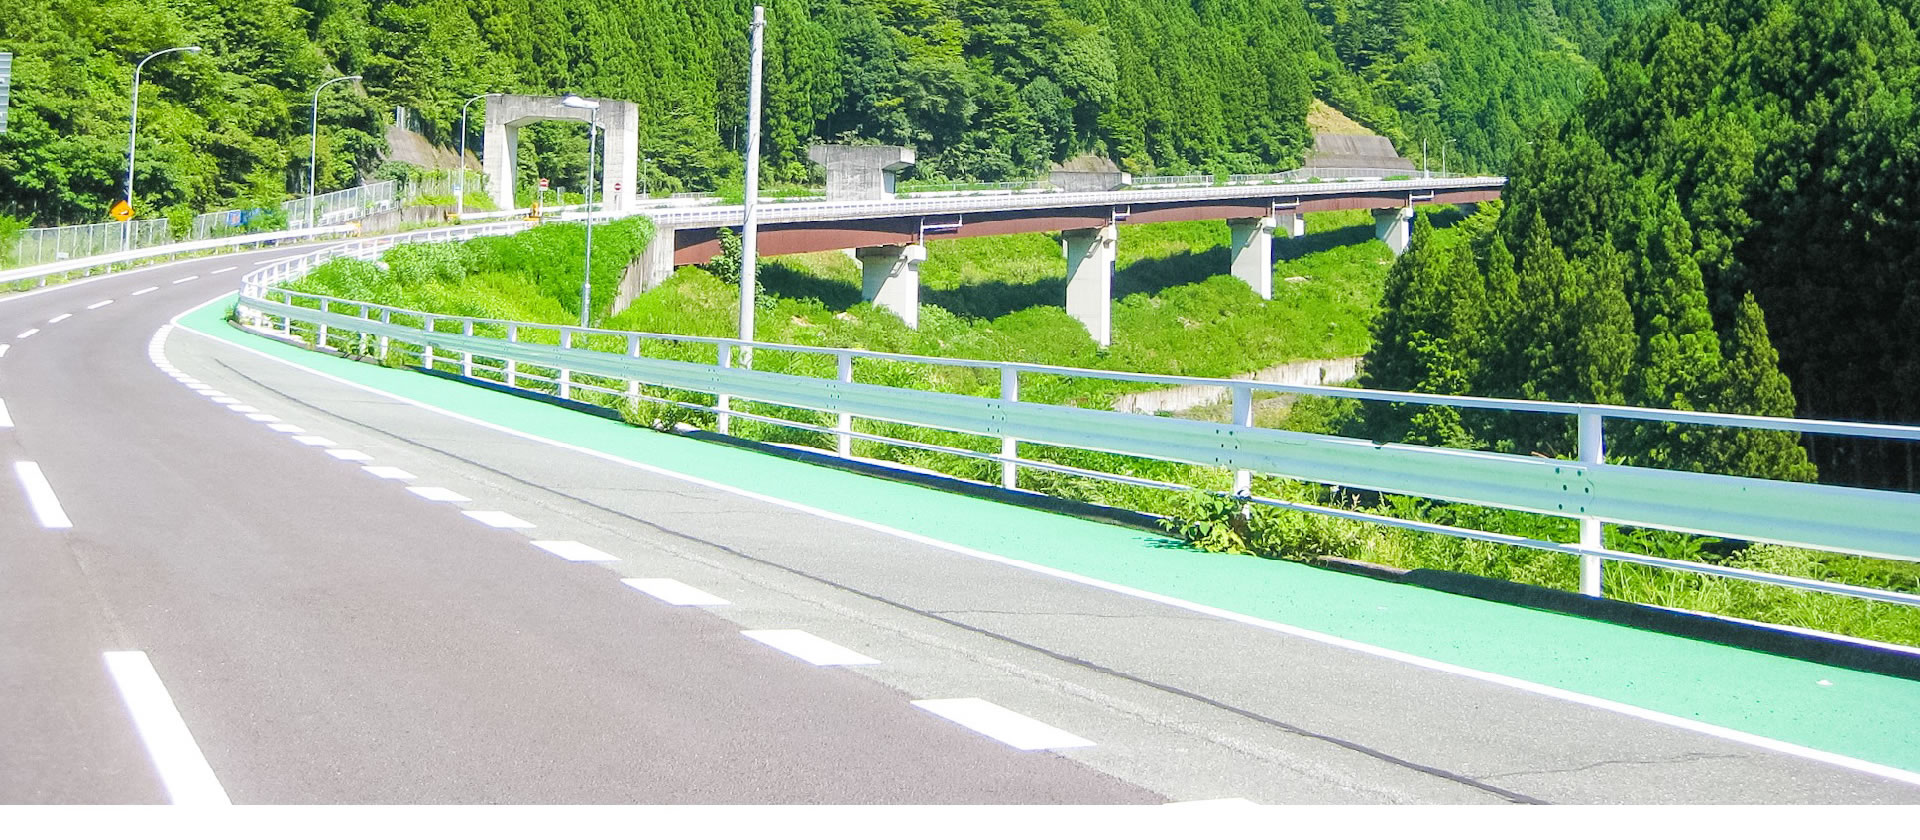 日綱道路整備株式会社の道路関連事業イメージ写真